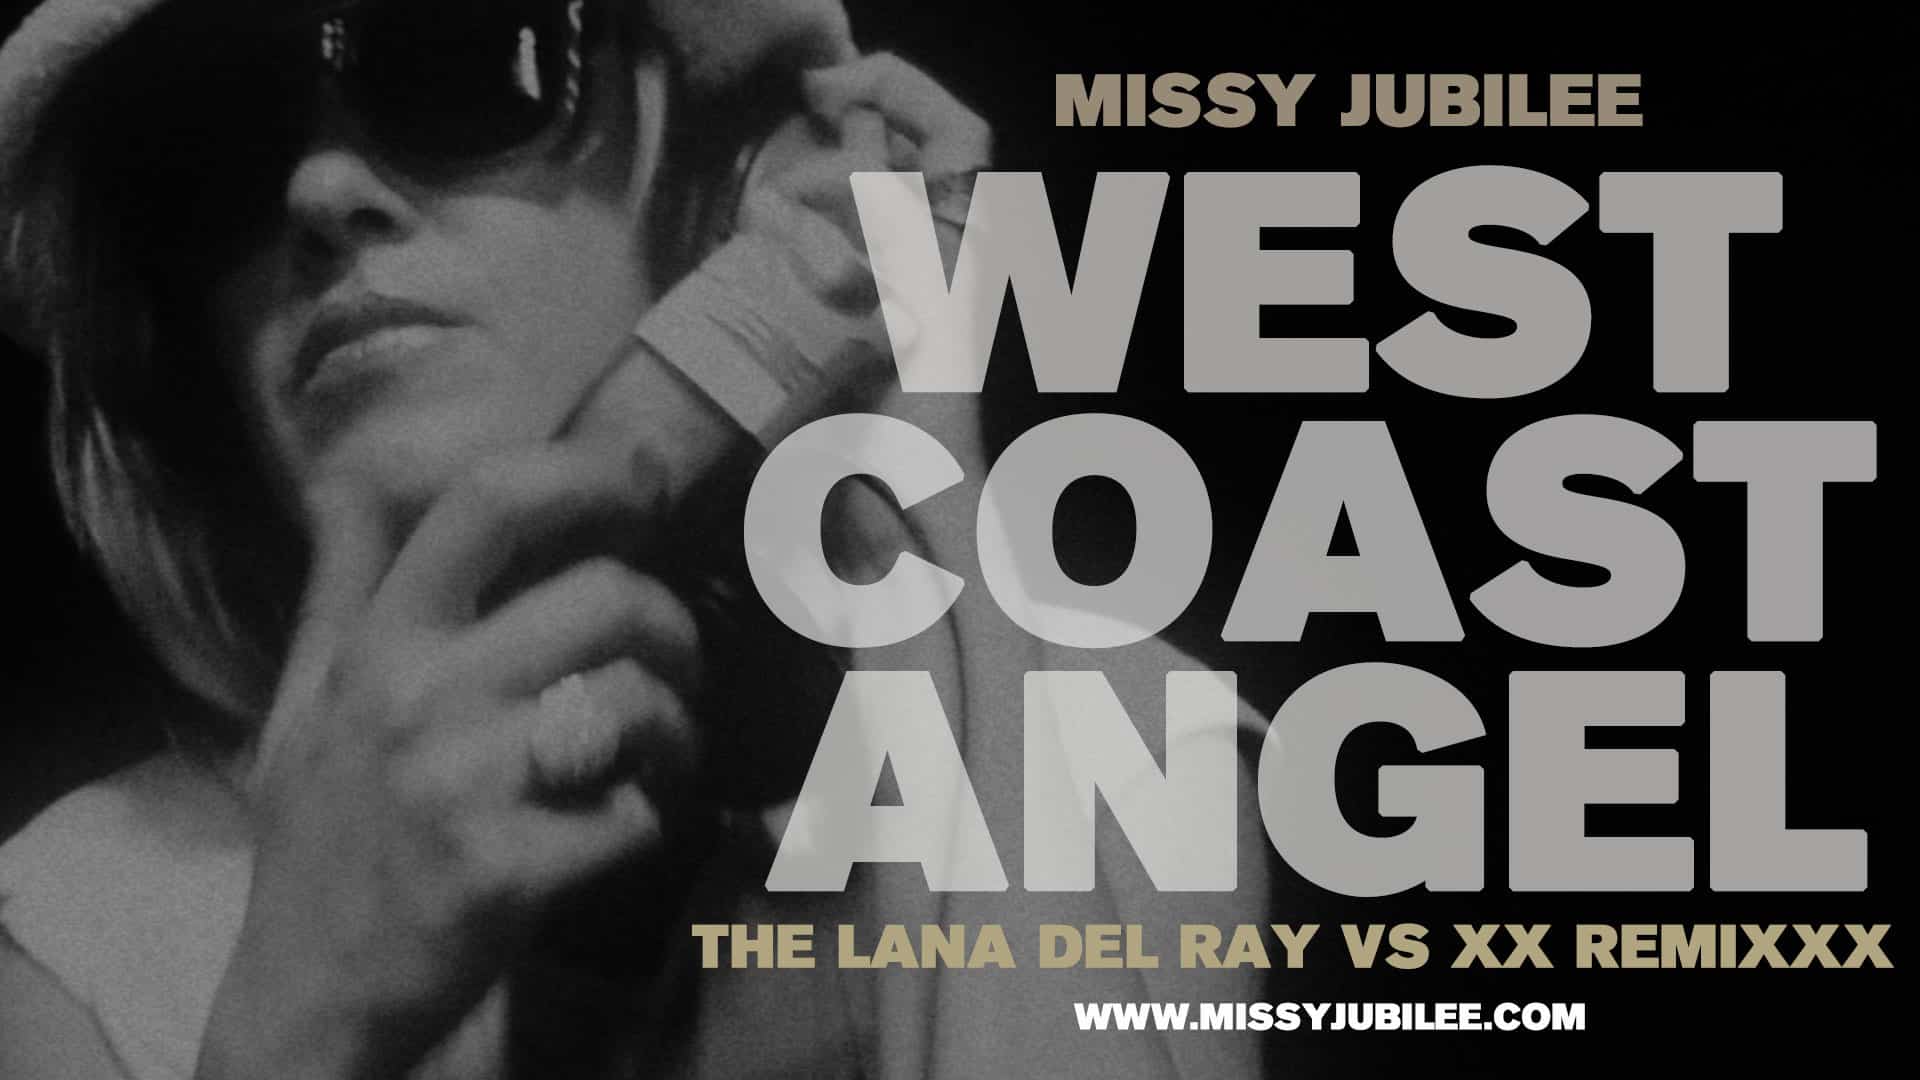 Missy Jubilee West Coast Angel 1